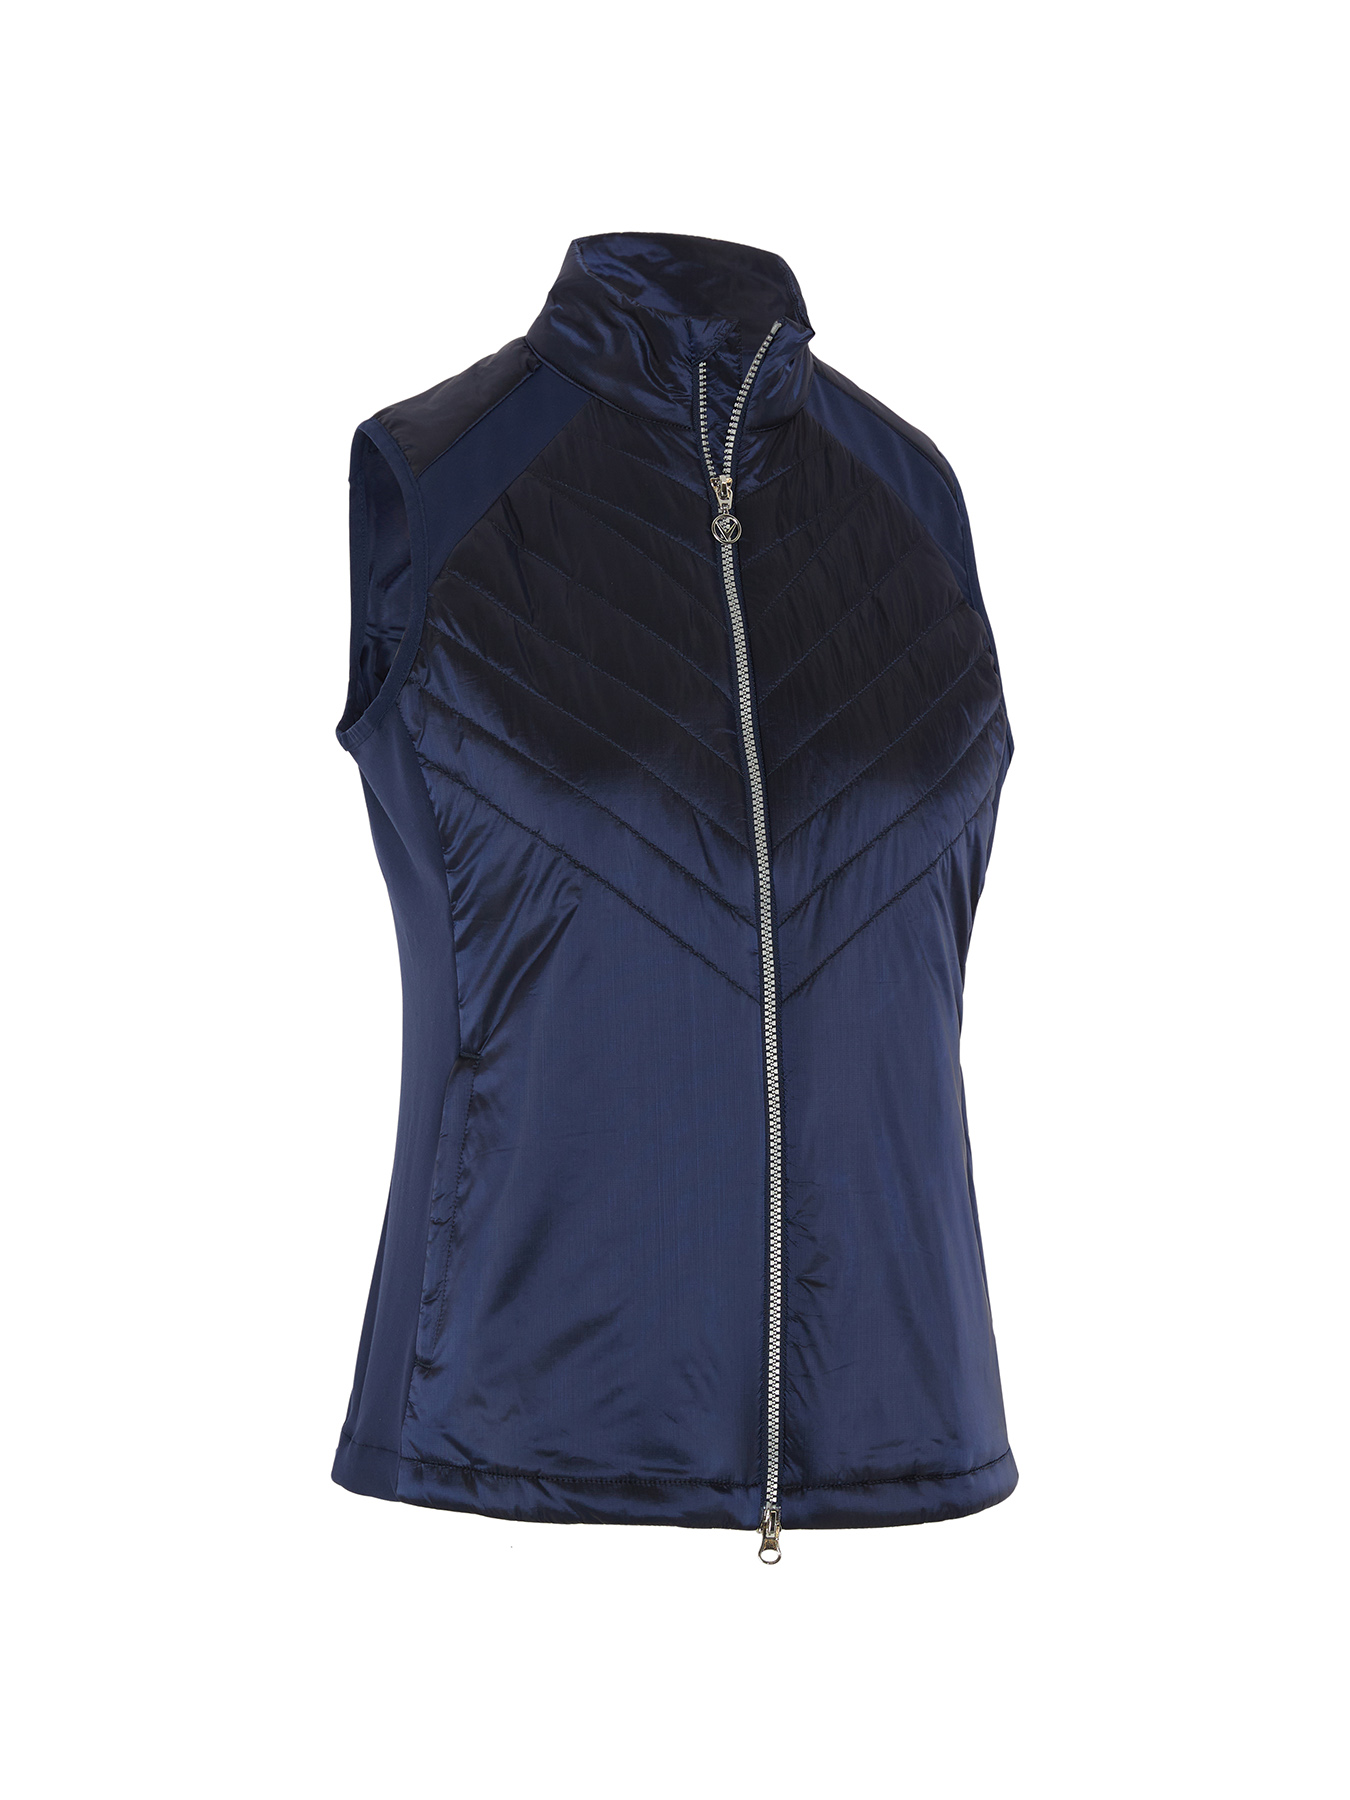 Callaway Chev Primaloft dámská golfová vesta, tmavě modrá, vel. XL